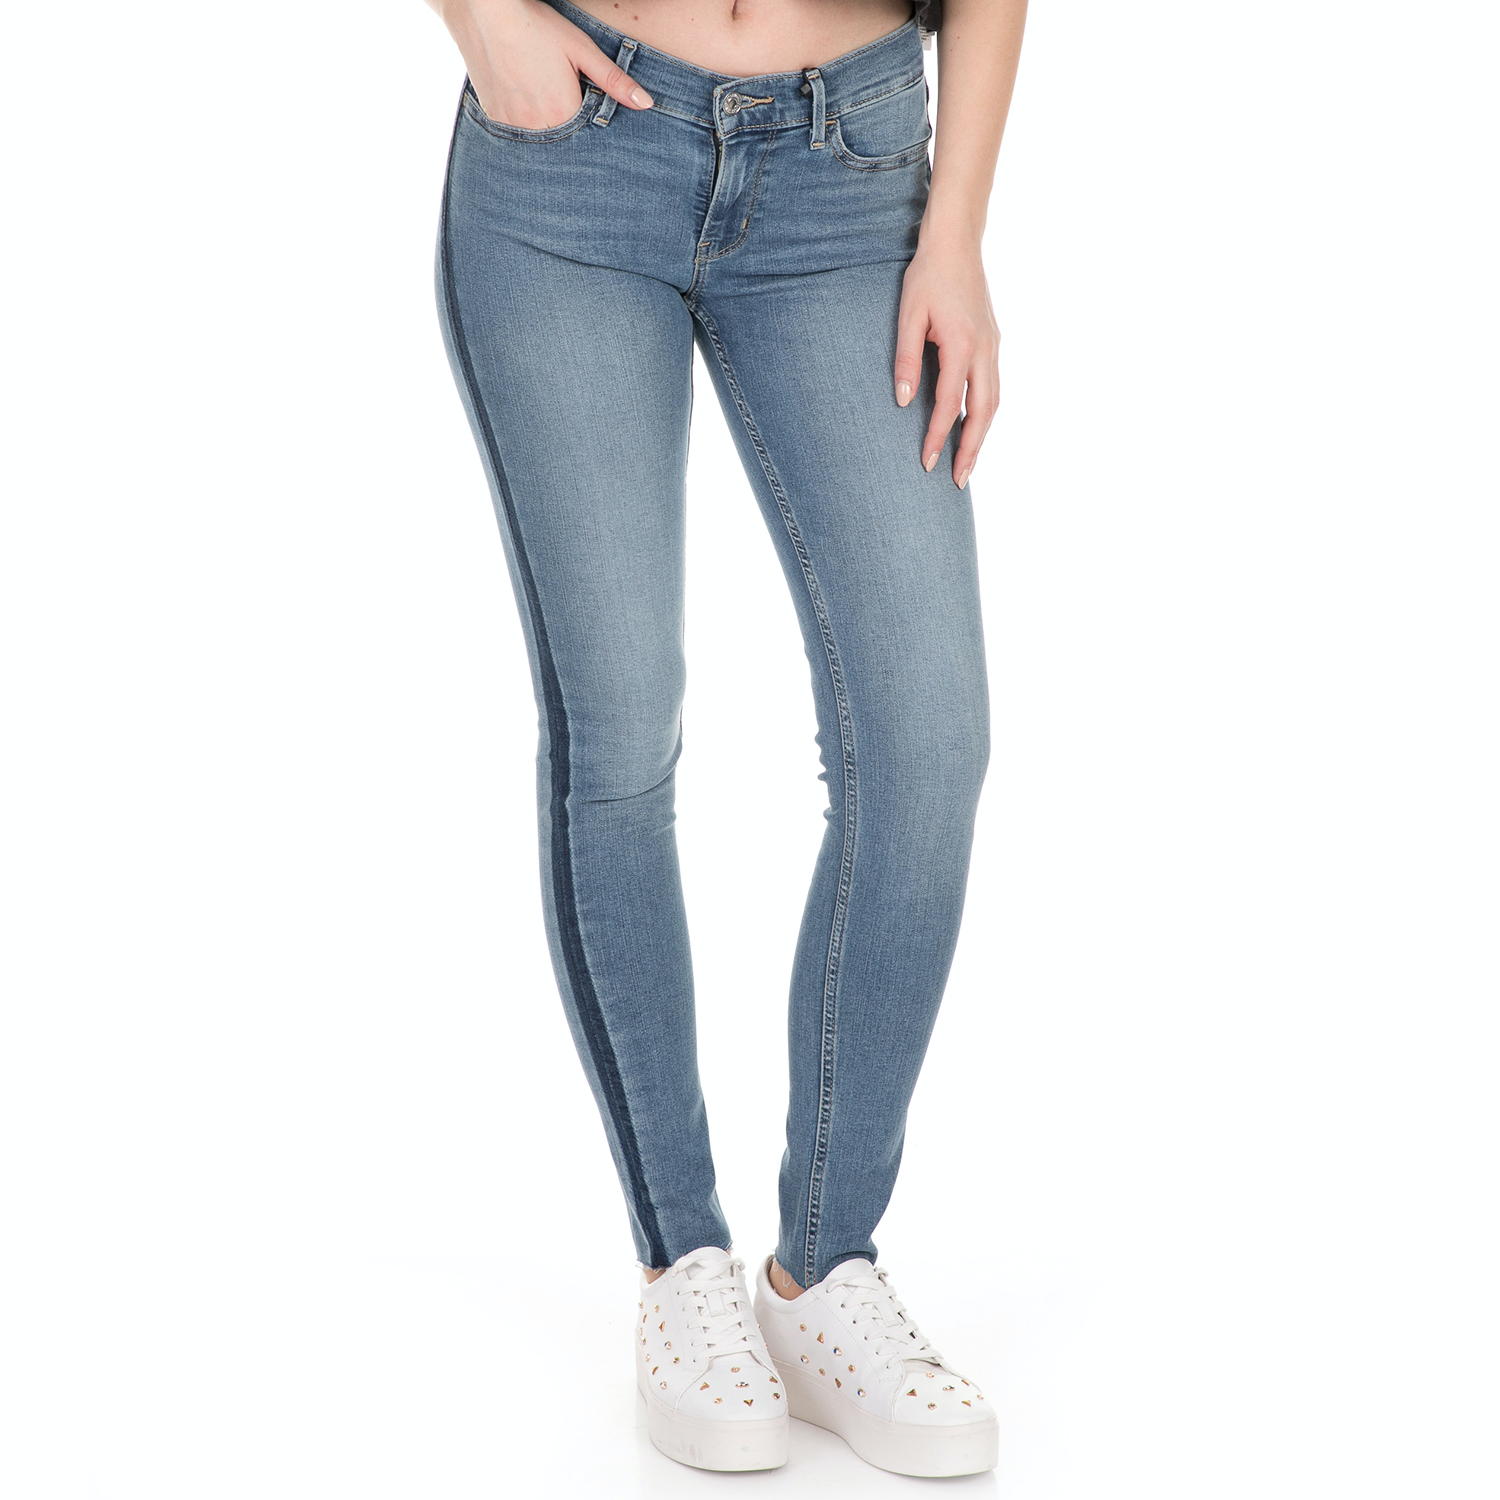 Γυναικεία/Ρούχα/Τζίν/Skinny LEVI'S - Γυναικείο jean παντελόνι LEVI'S INNOVATION SUPER SKINNY DANCIN μπλε